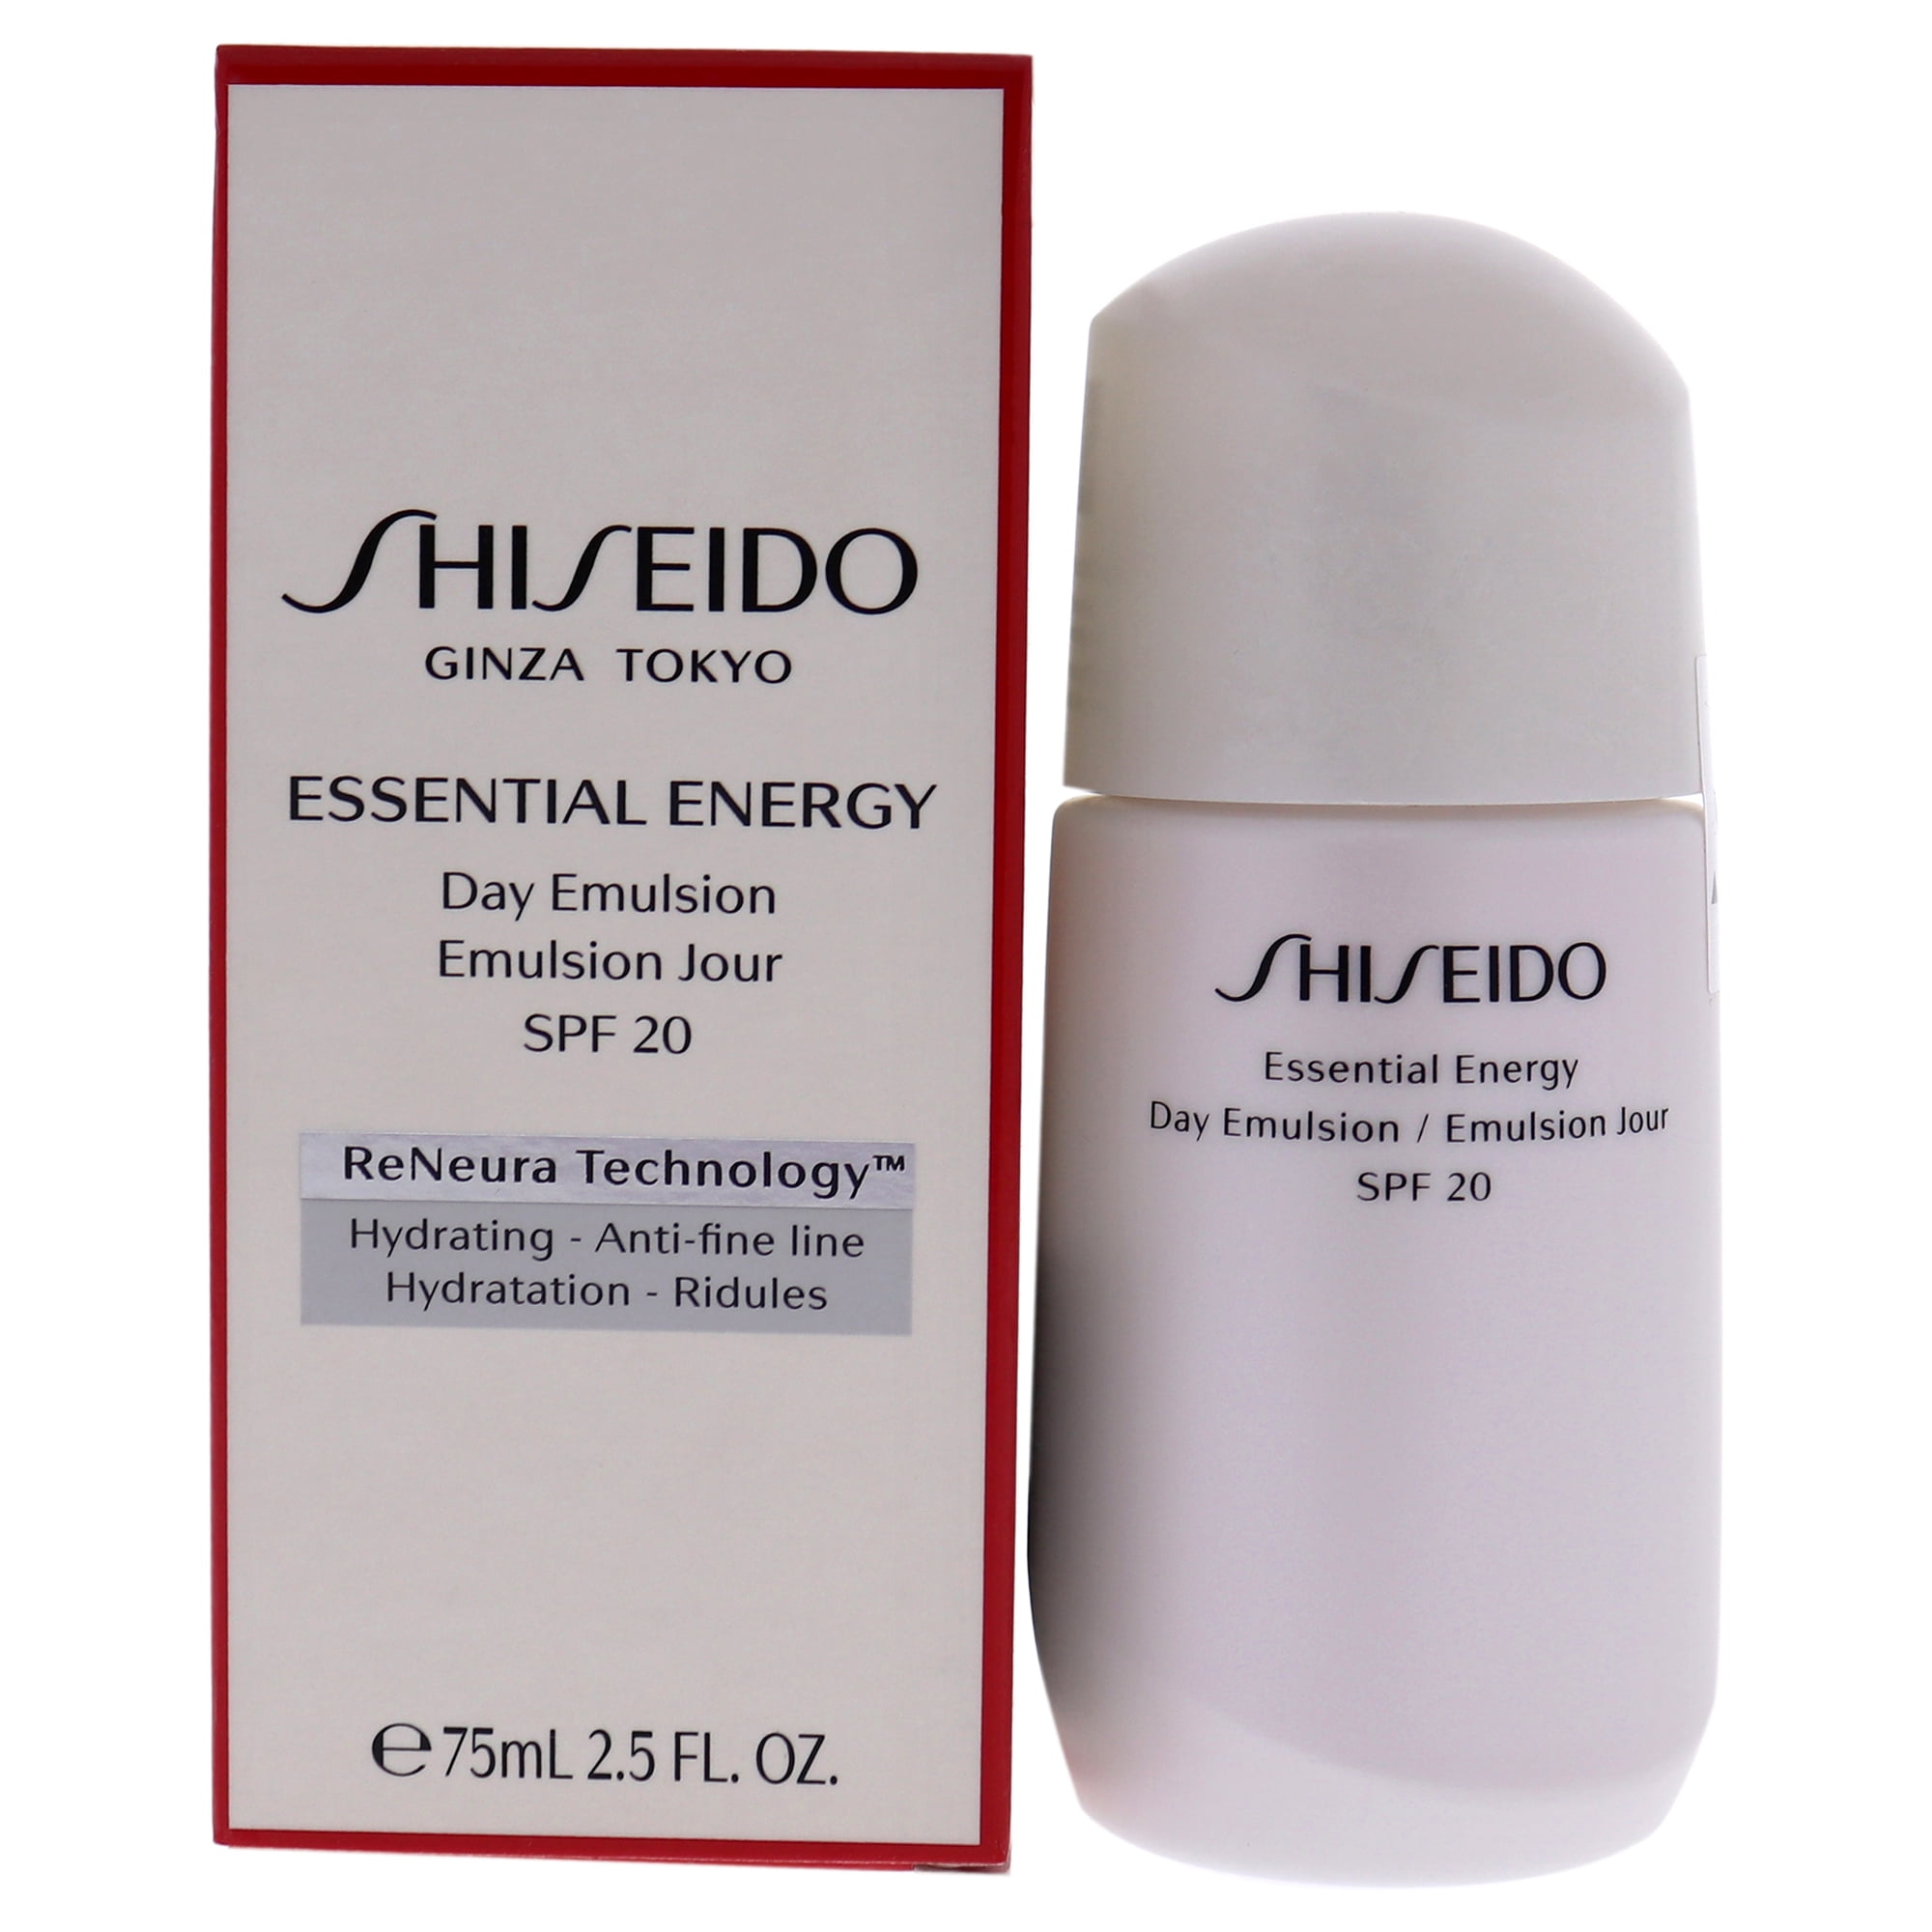 Shiseido essential energy